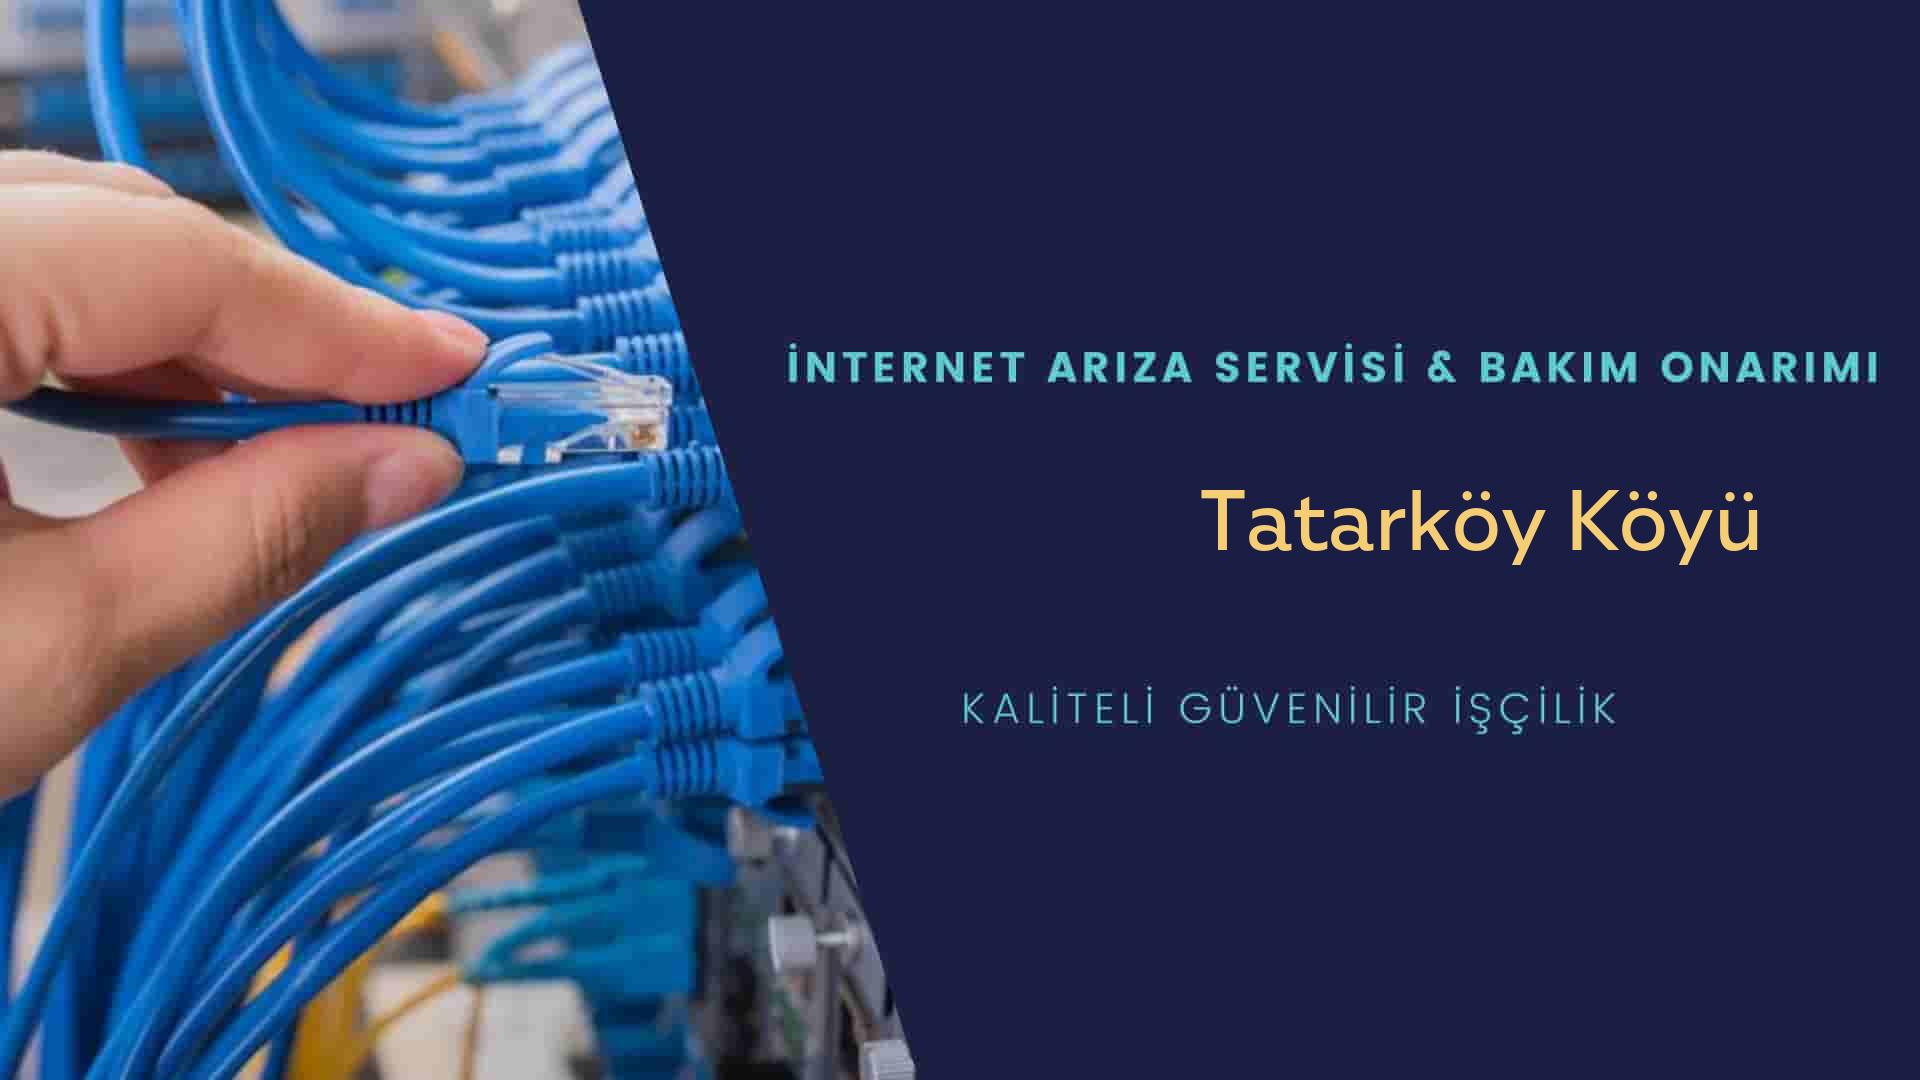 Tatarköy Köyü internet kablosu çekimi yapan yerler veya elektrikçiler mi? arıyorsunuz doğru yerdesiniz o zaman sizlere 7/24 yardımcı olacak profesyonel ustalarımız bir telefon kadar yakındır size.